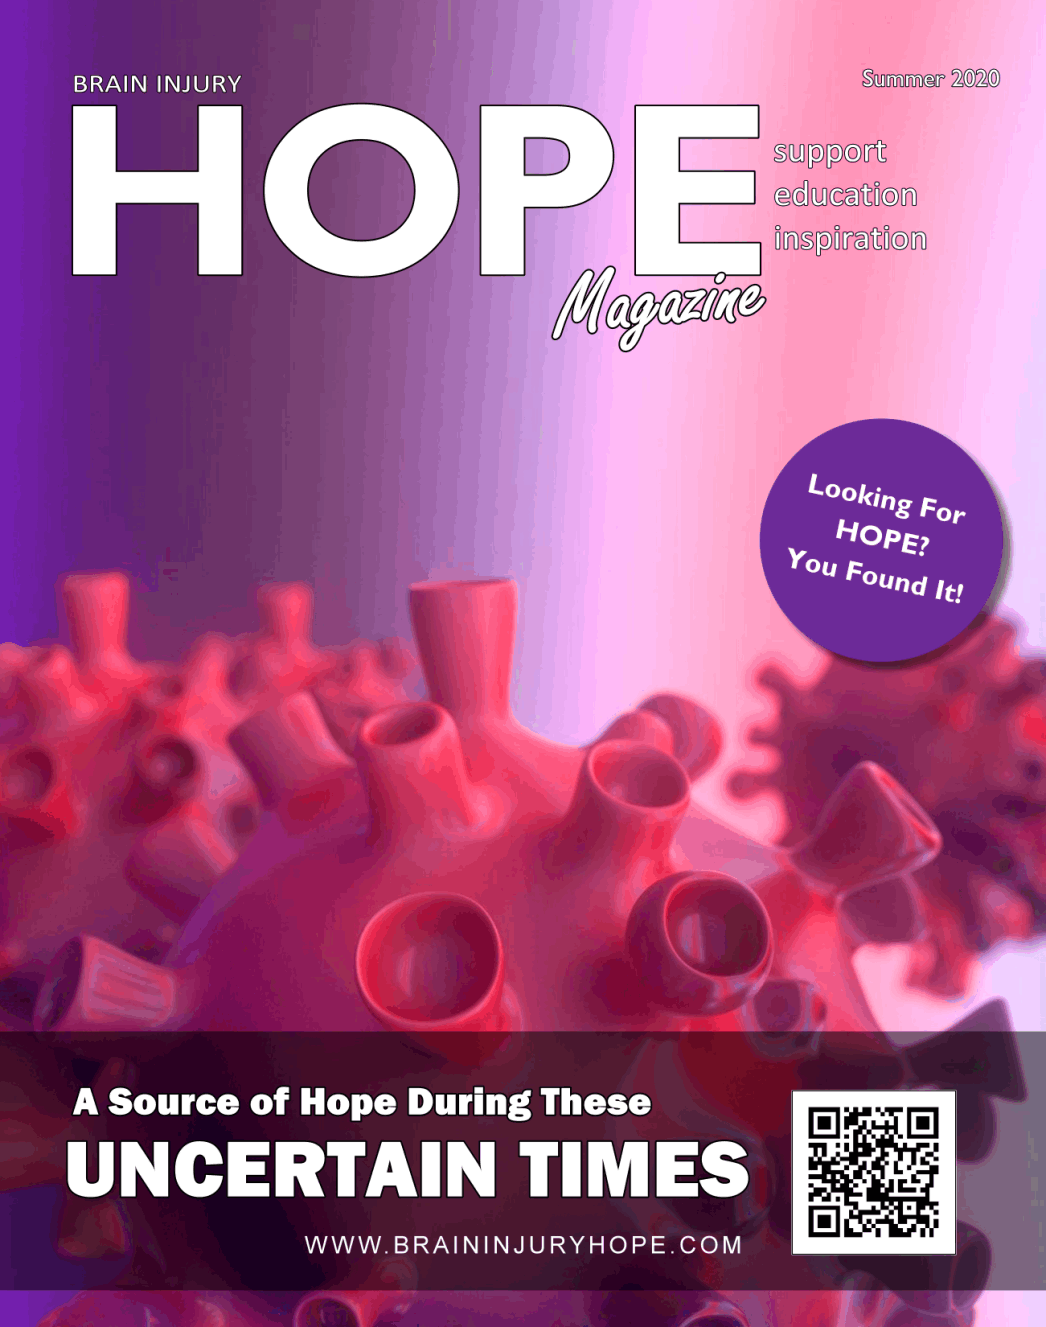 Brain Injury Hope Magazine 